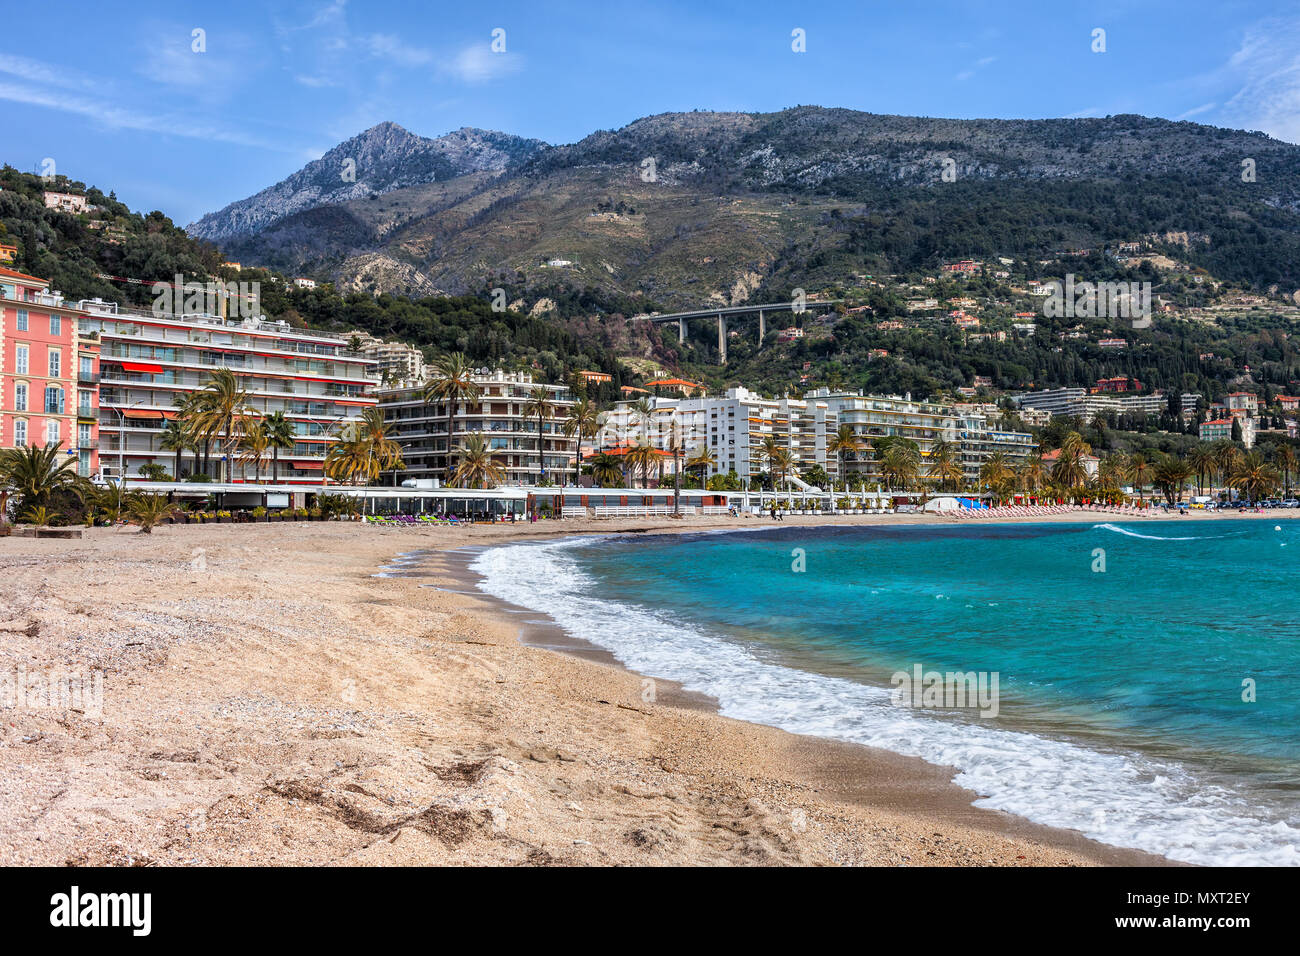 Spiaggia di Menton città sul mare in Francia, resort sulla Costa Azzurra - La costa azzurra, Alpes Maritimes Foto Stock